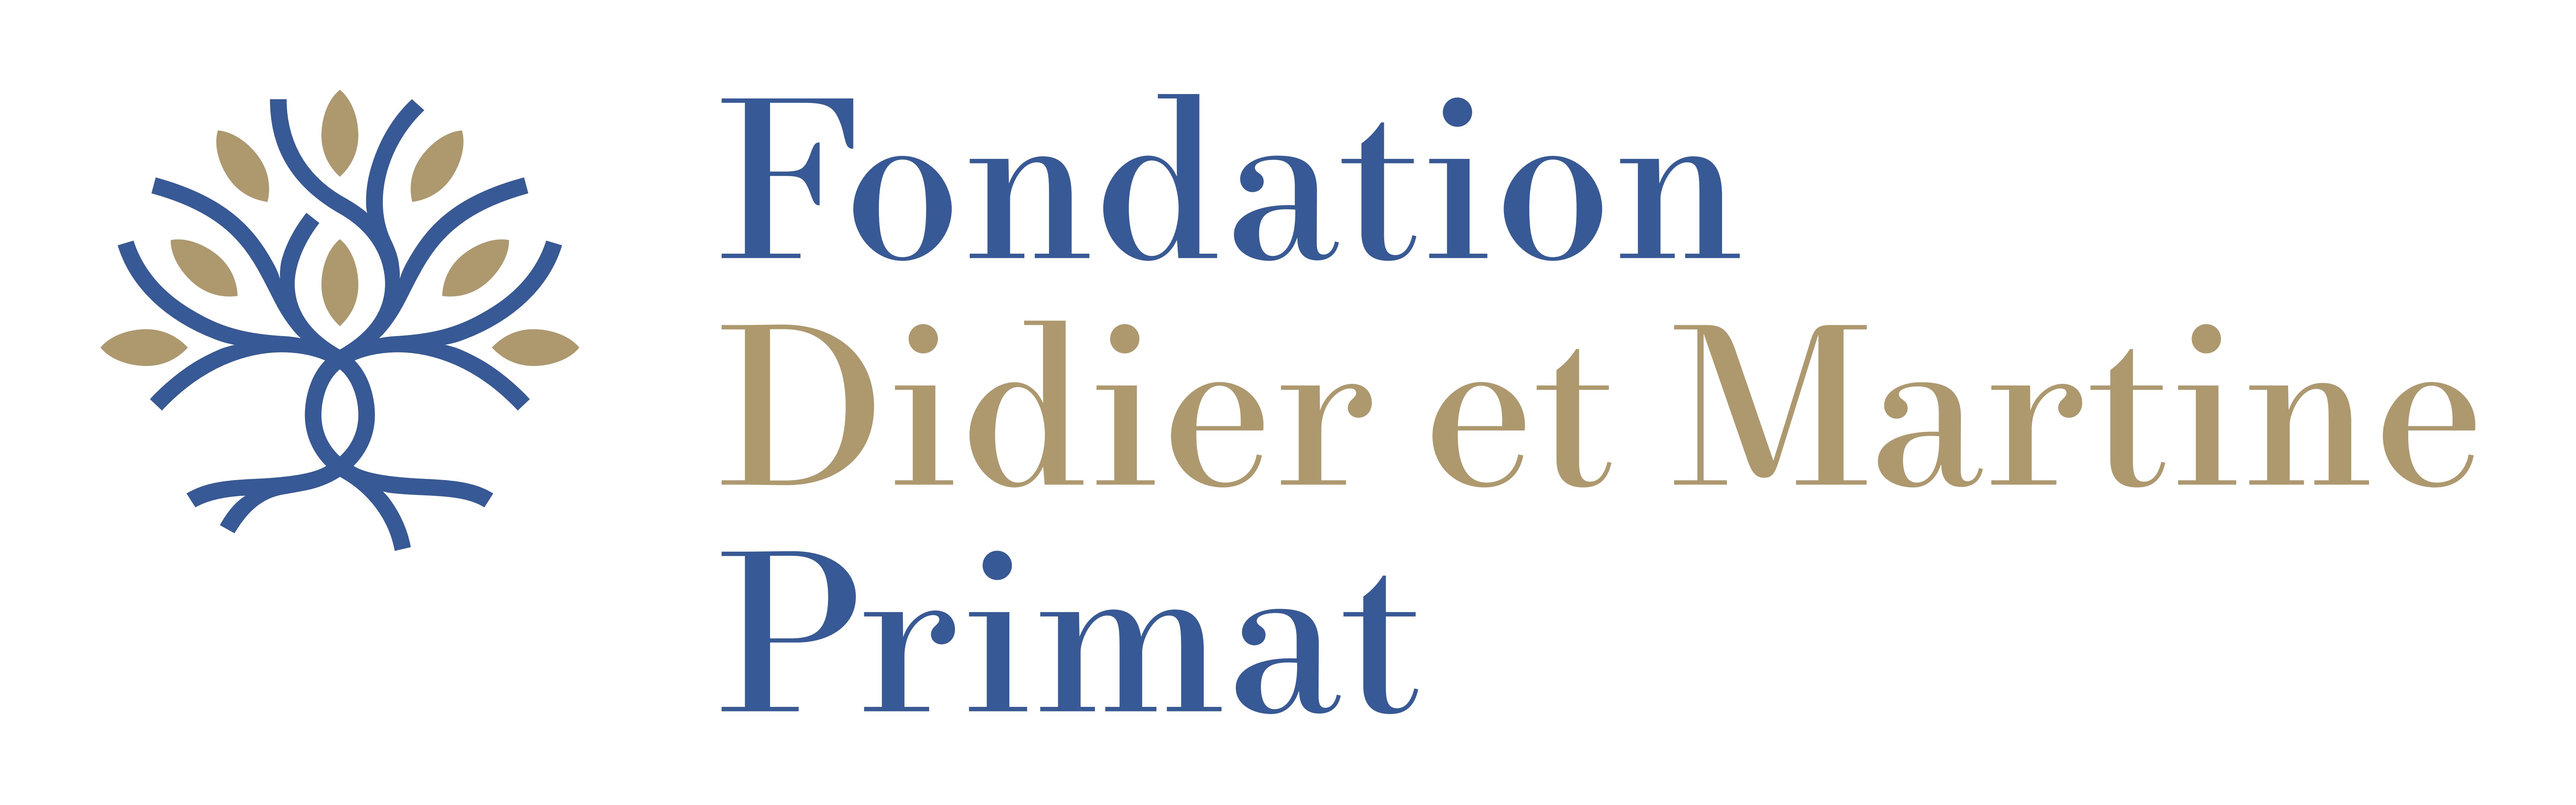 Fondation Didier et Martine Primat